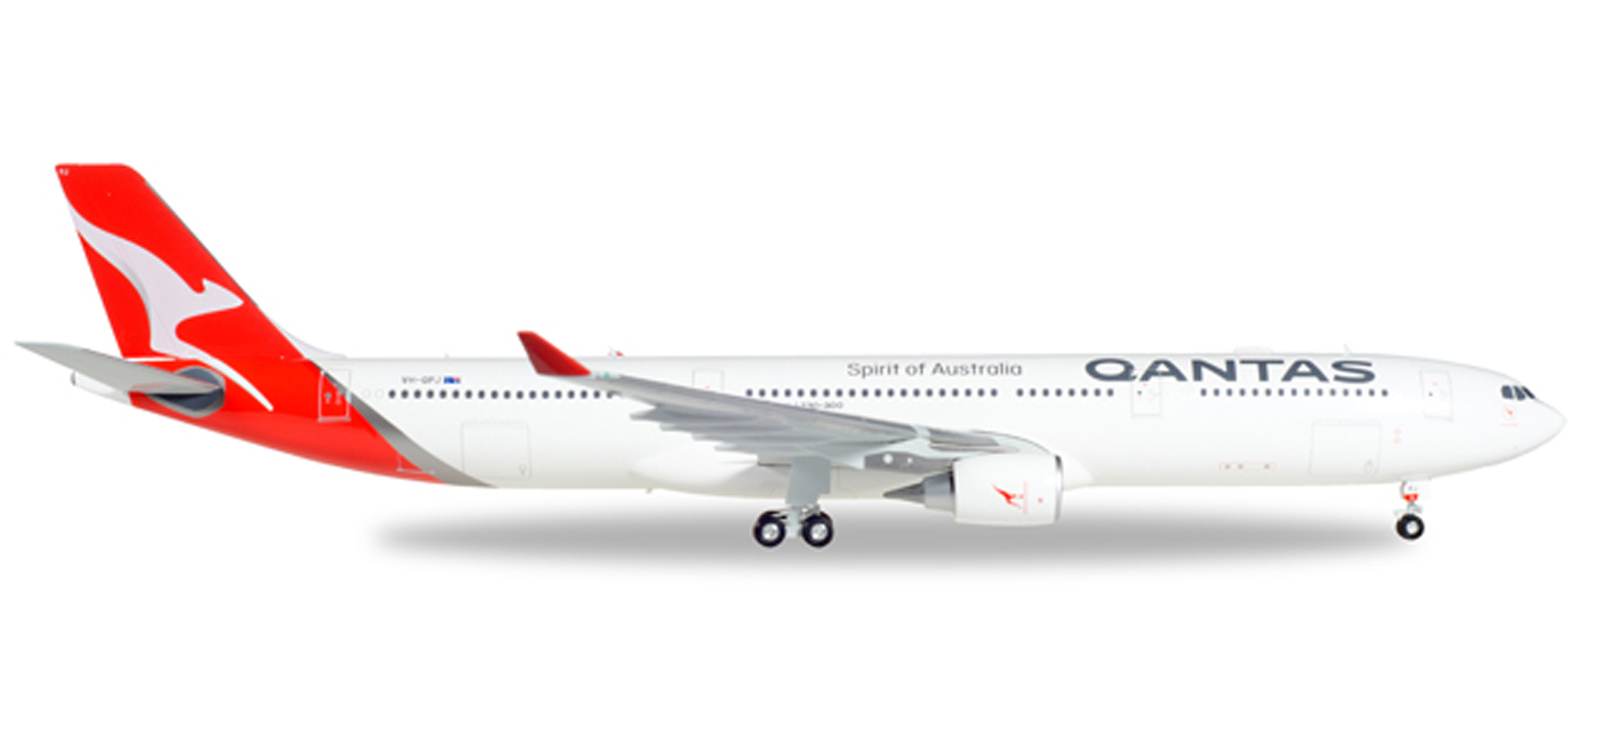 Qantas Airbus a330-300 Herpa 558532-1:200 neuf dans sa boîte New 2016 Colors-Neuf 